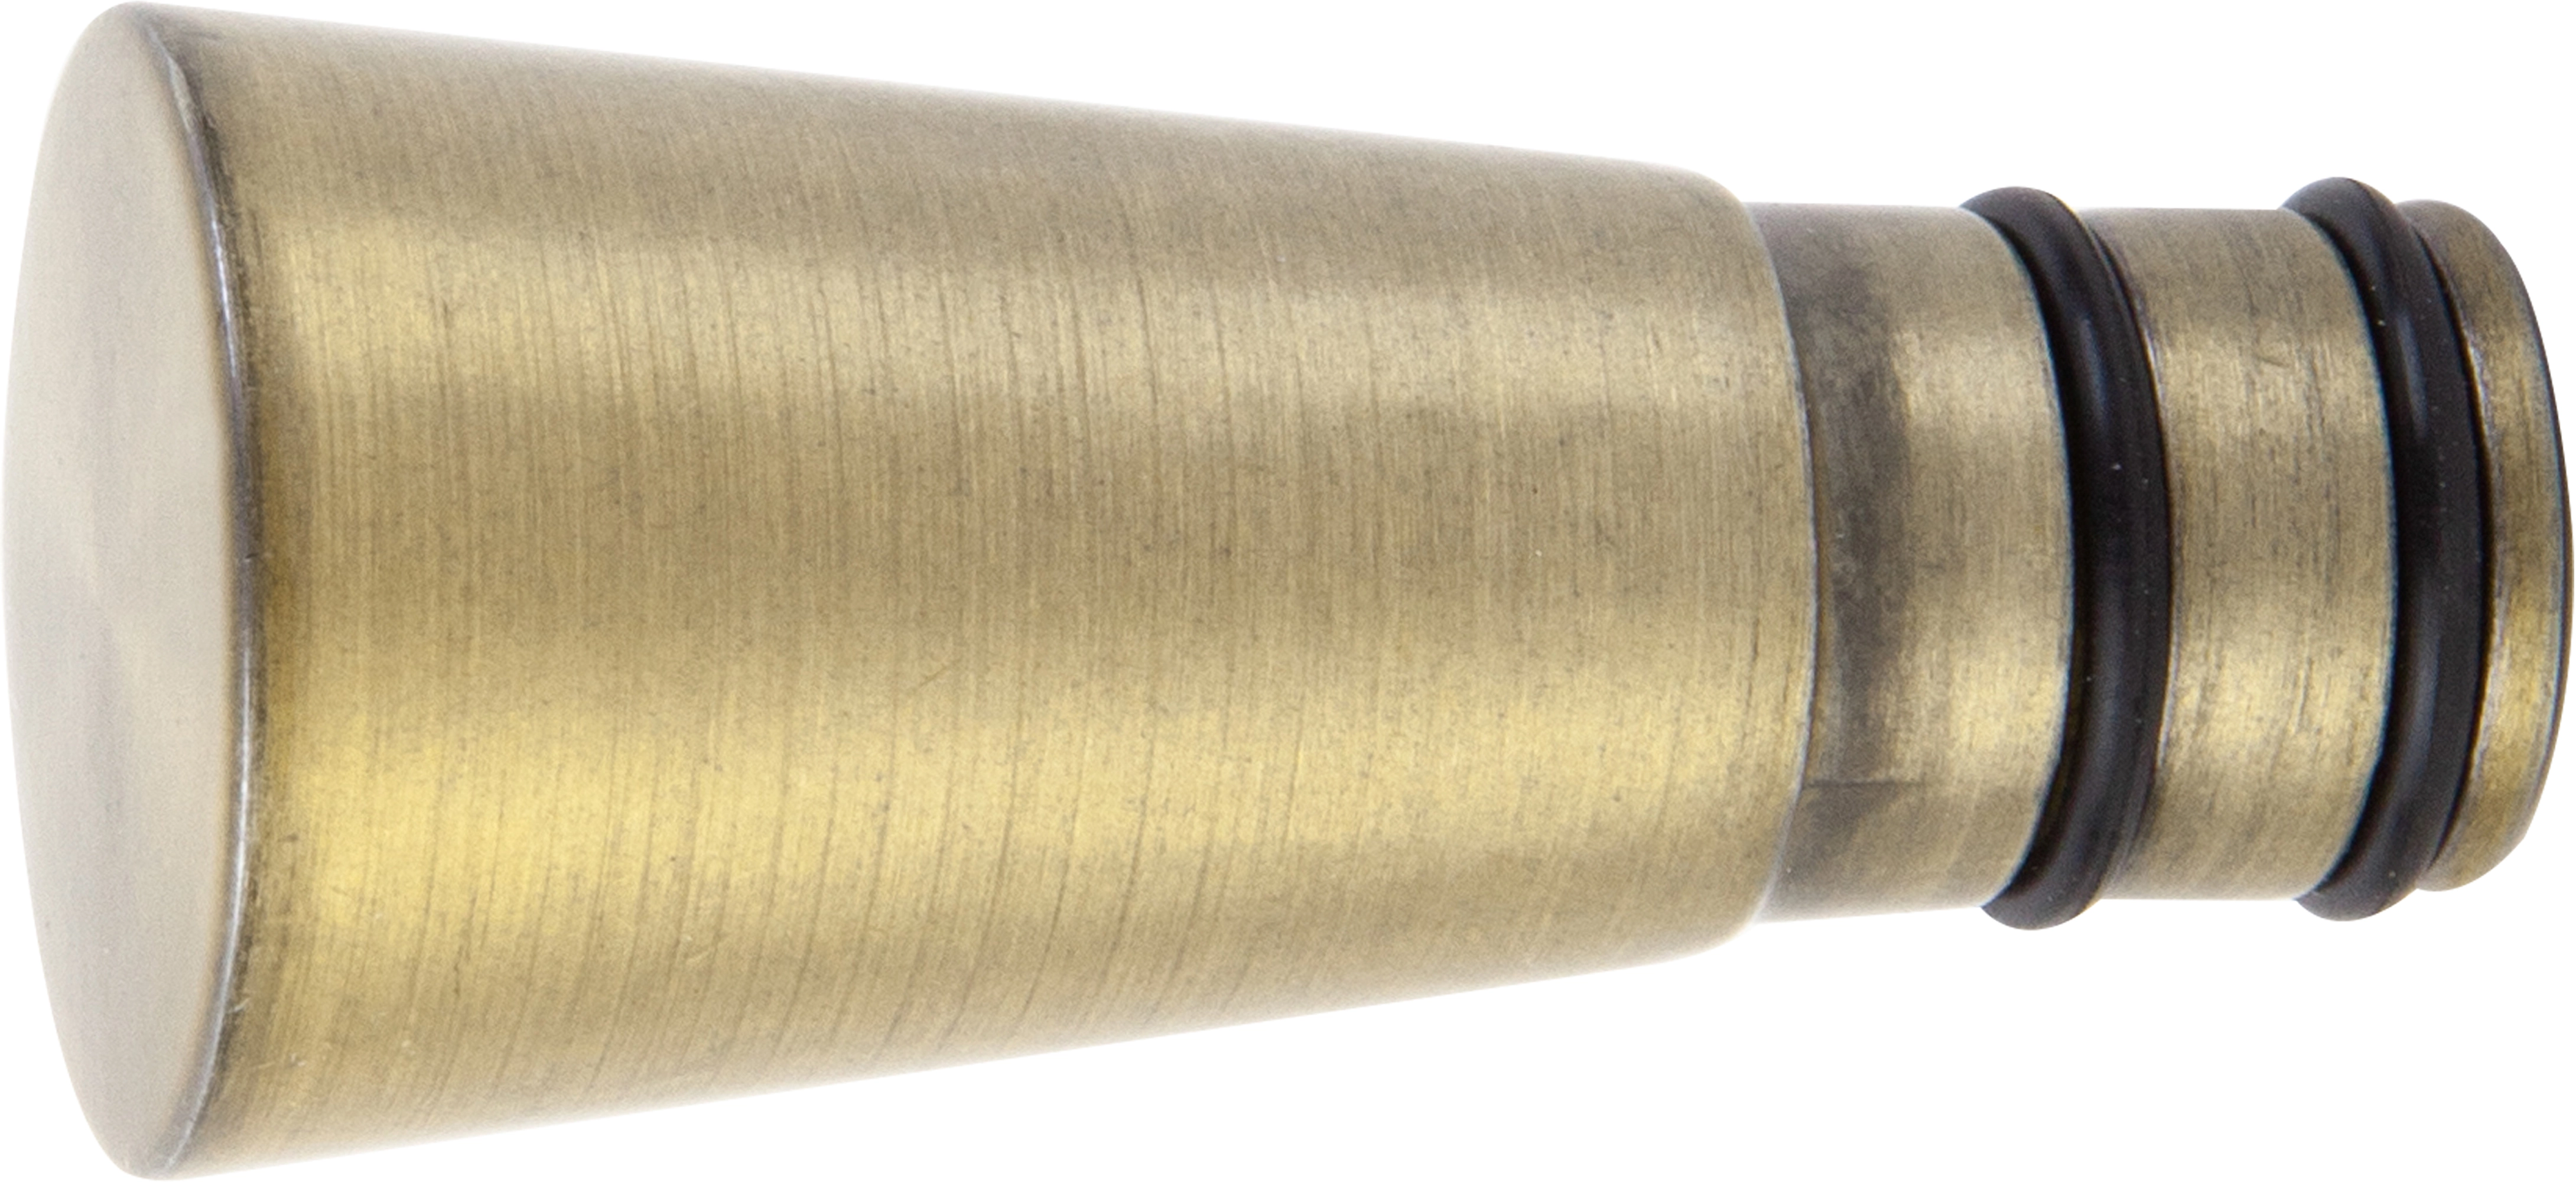 Gardinenstangen-Endstück Altgold Kegelform Ø 19 mm kaufen bei OBI